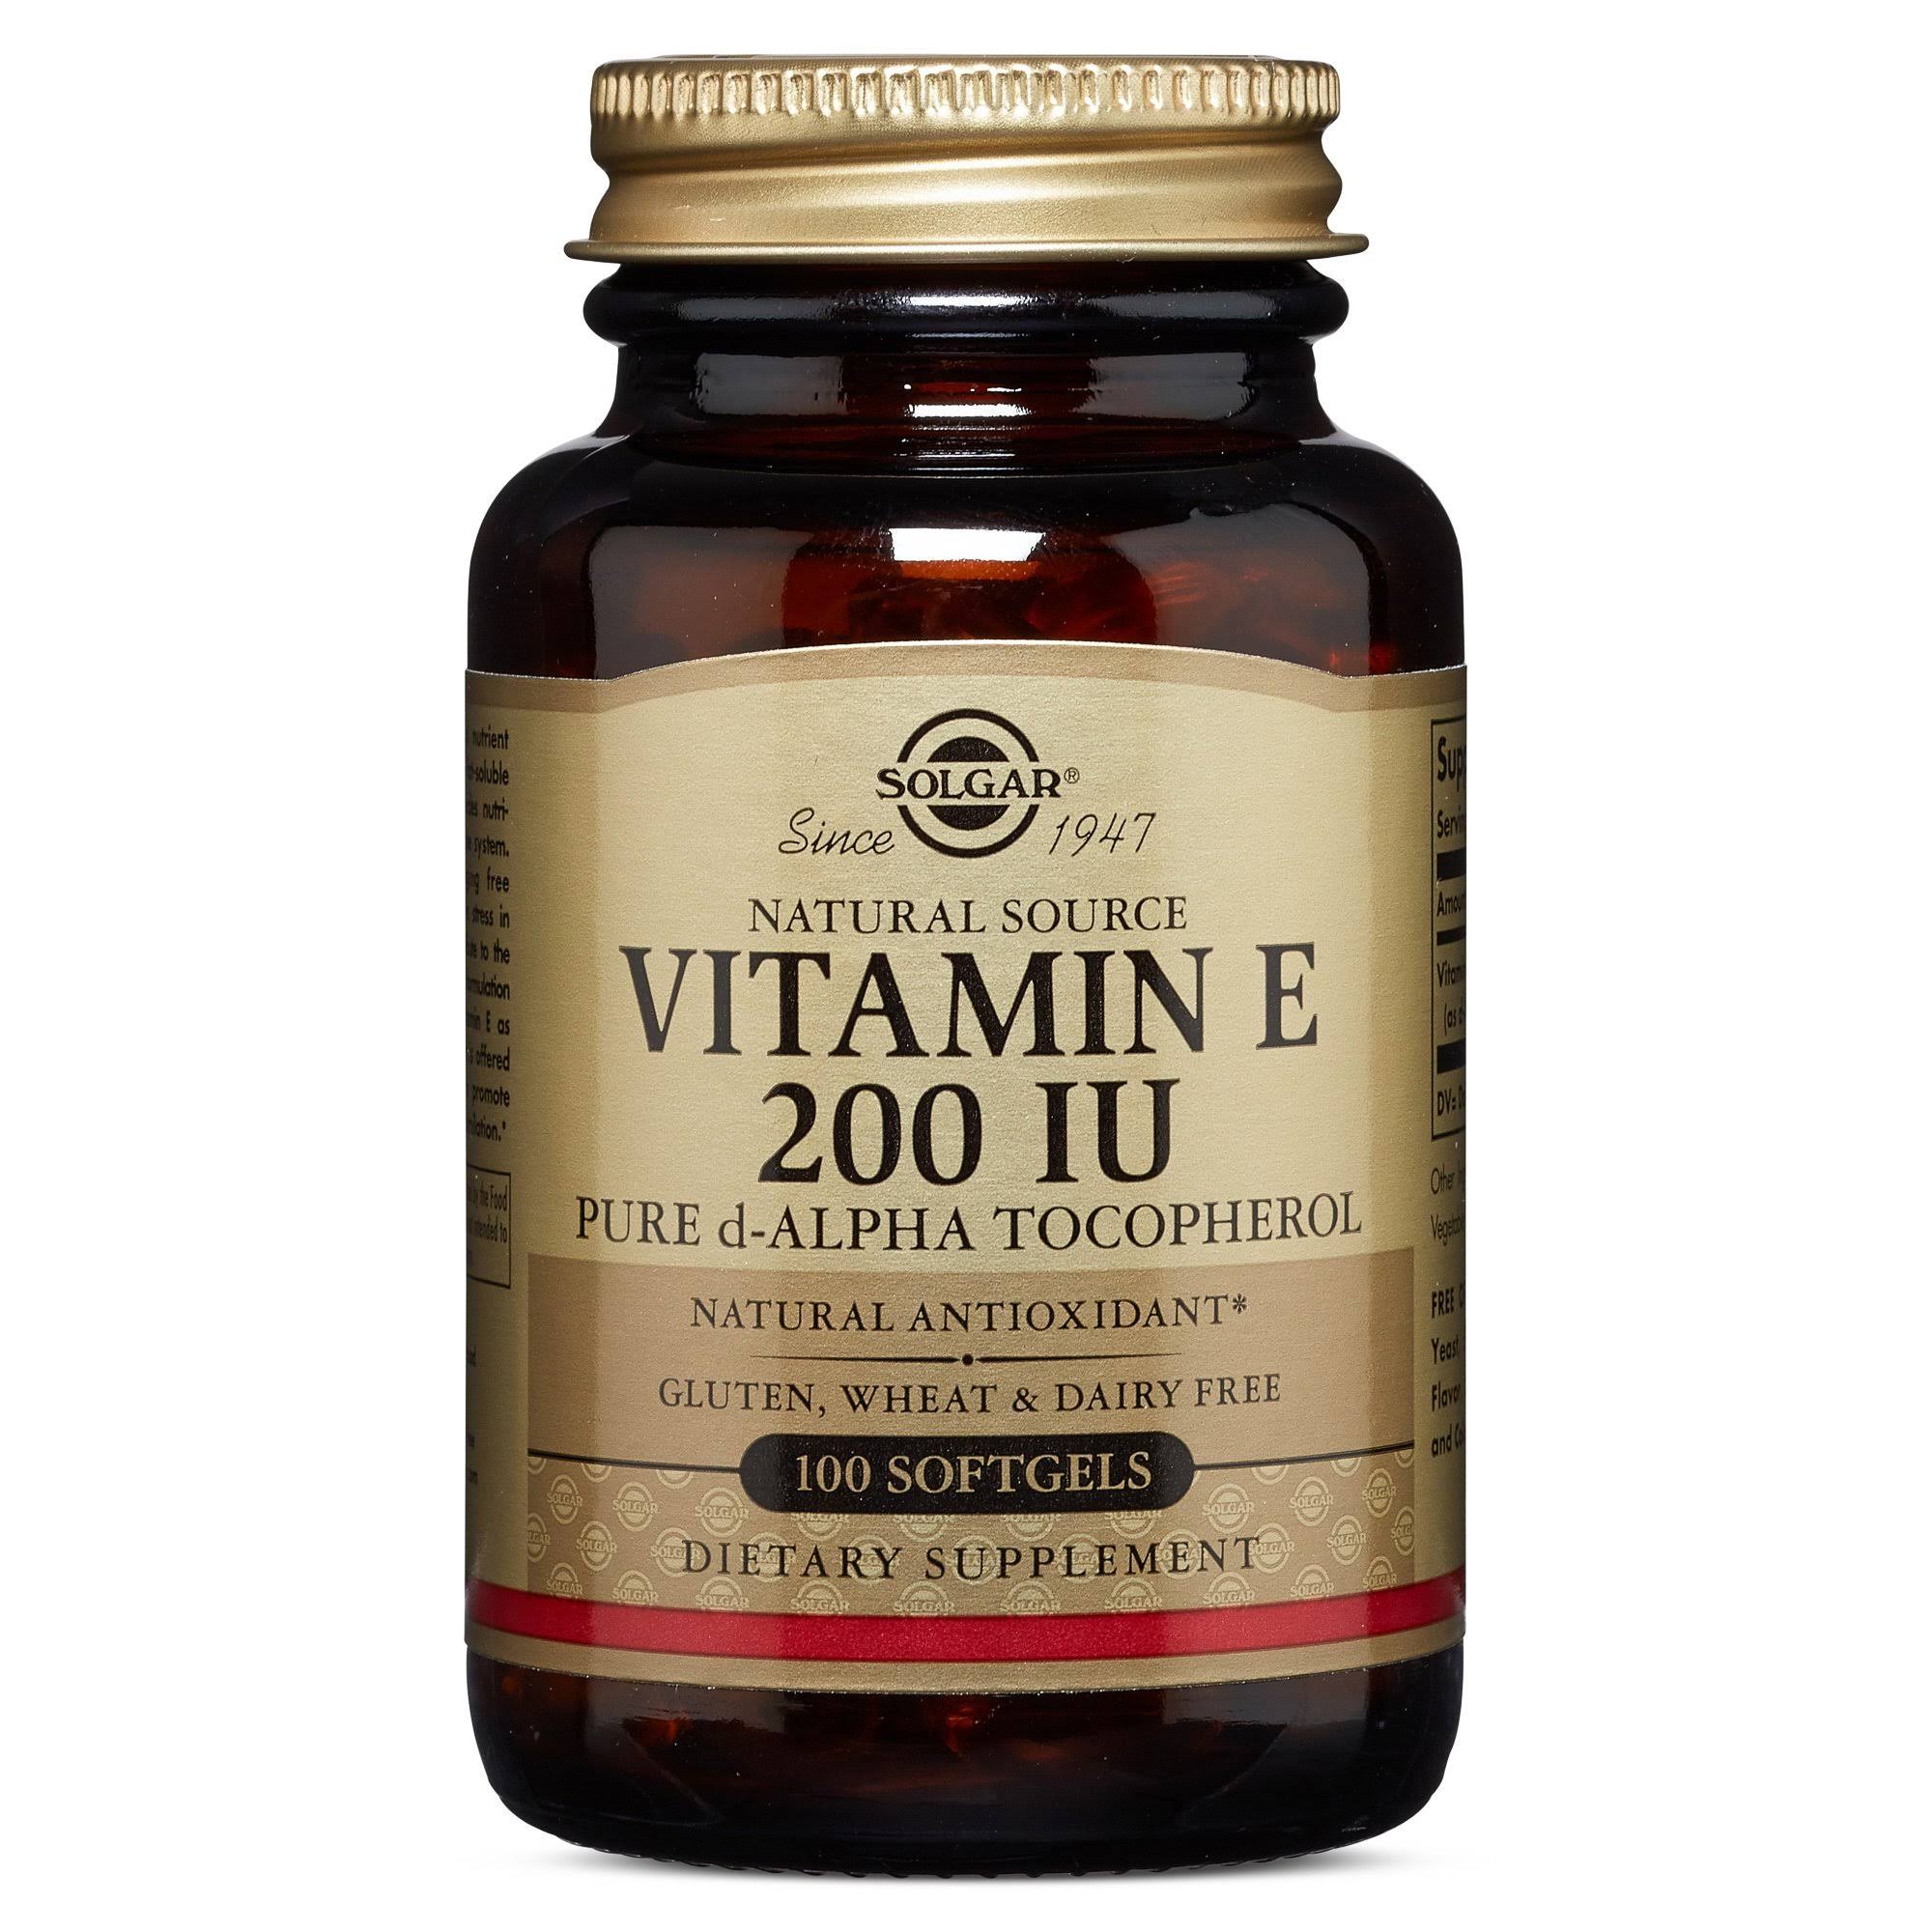 Solgar Vitamin E 200 IU 100 Softgels